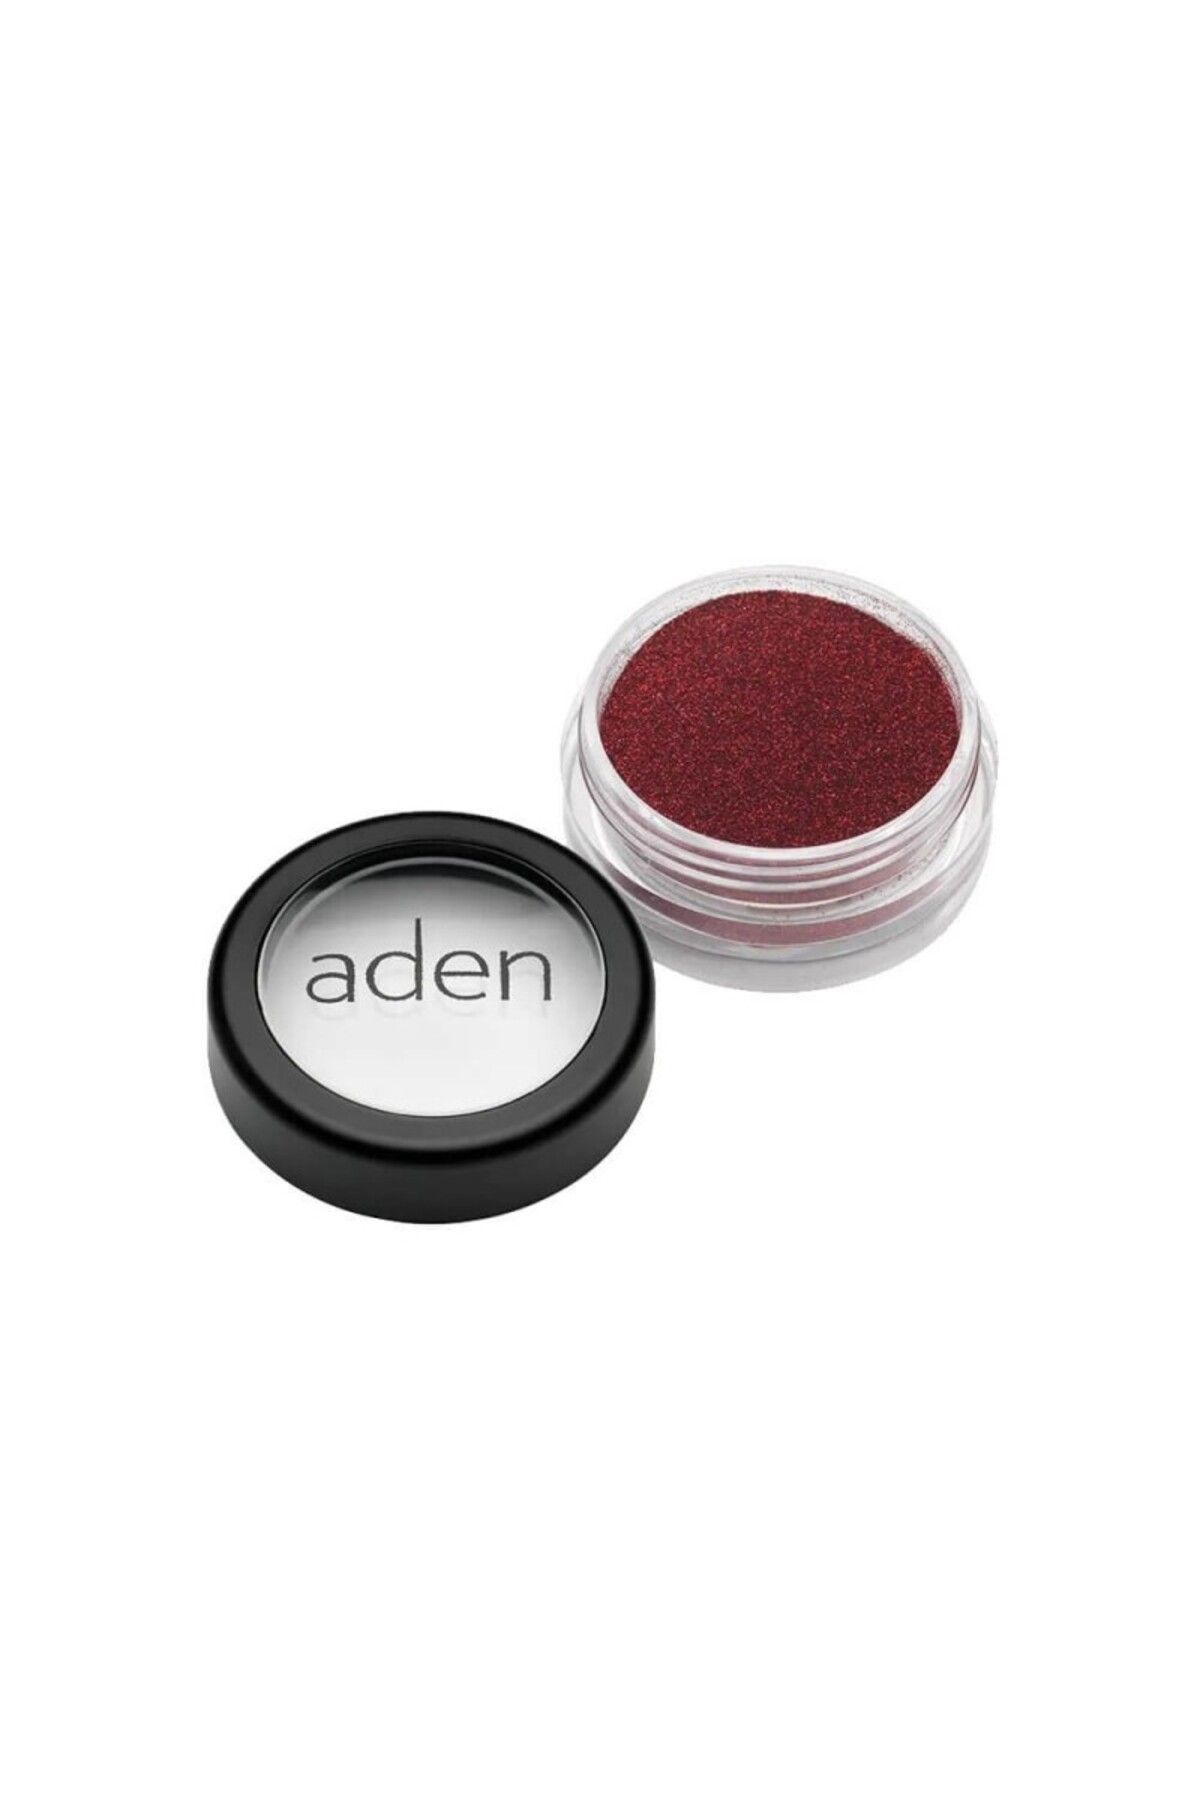 Aden Glitter Powder 36 Scarlet